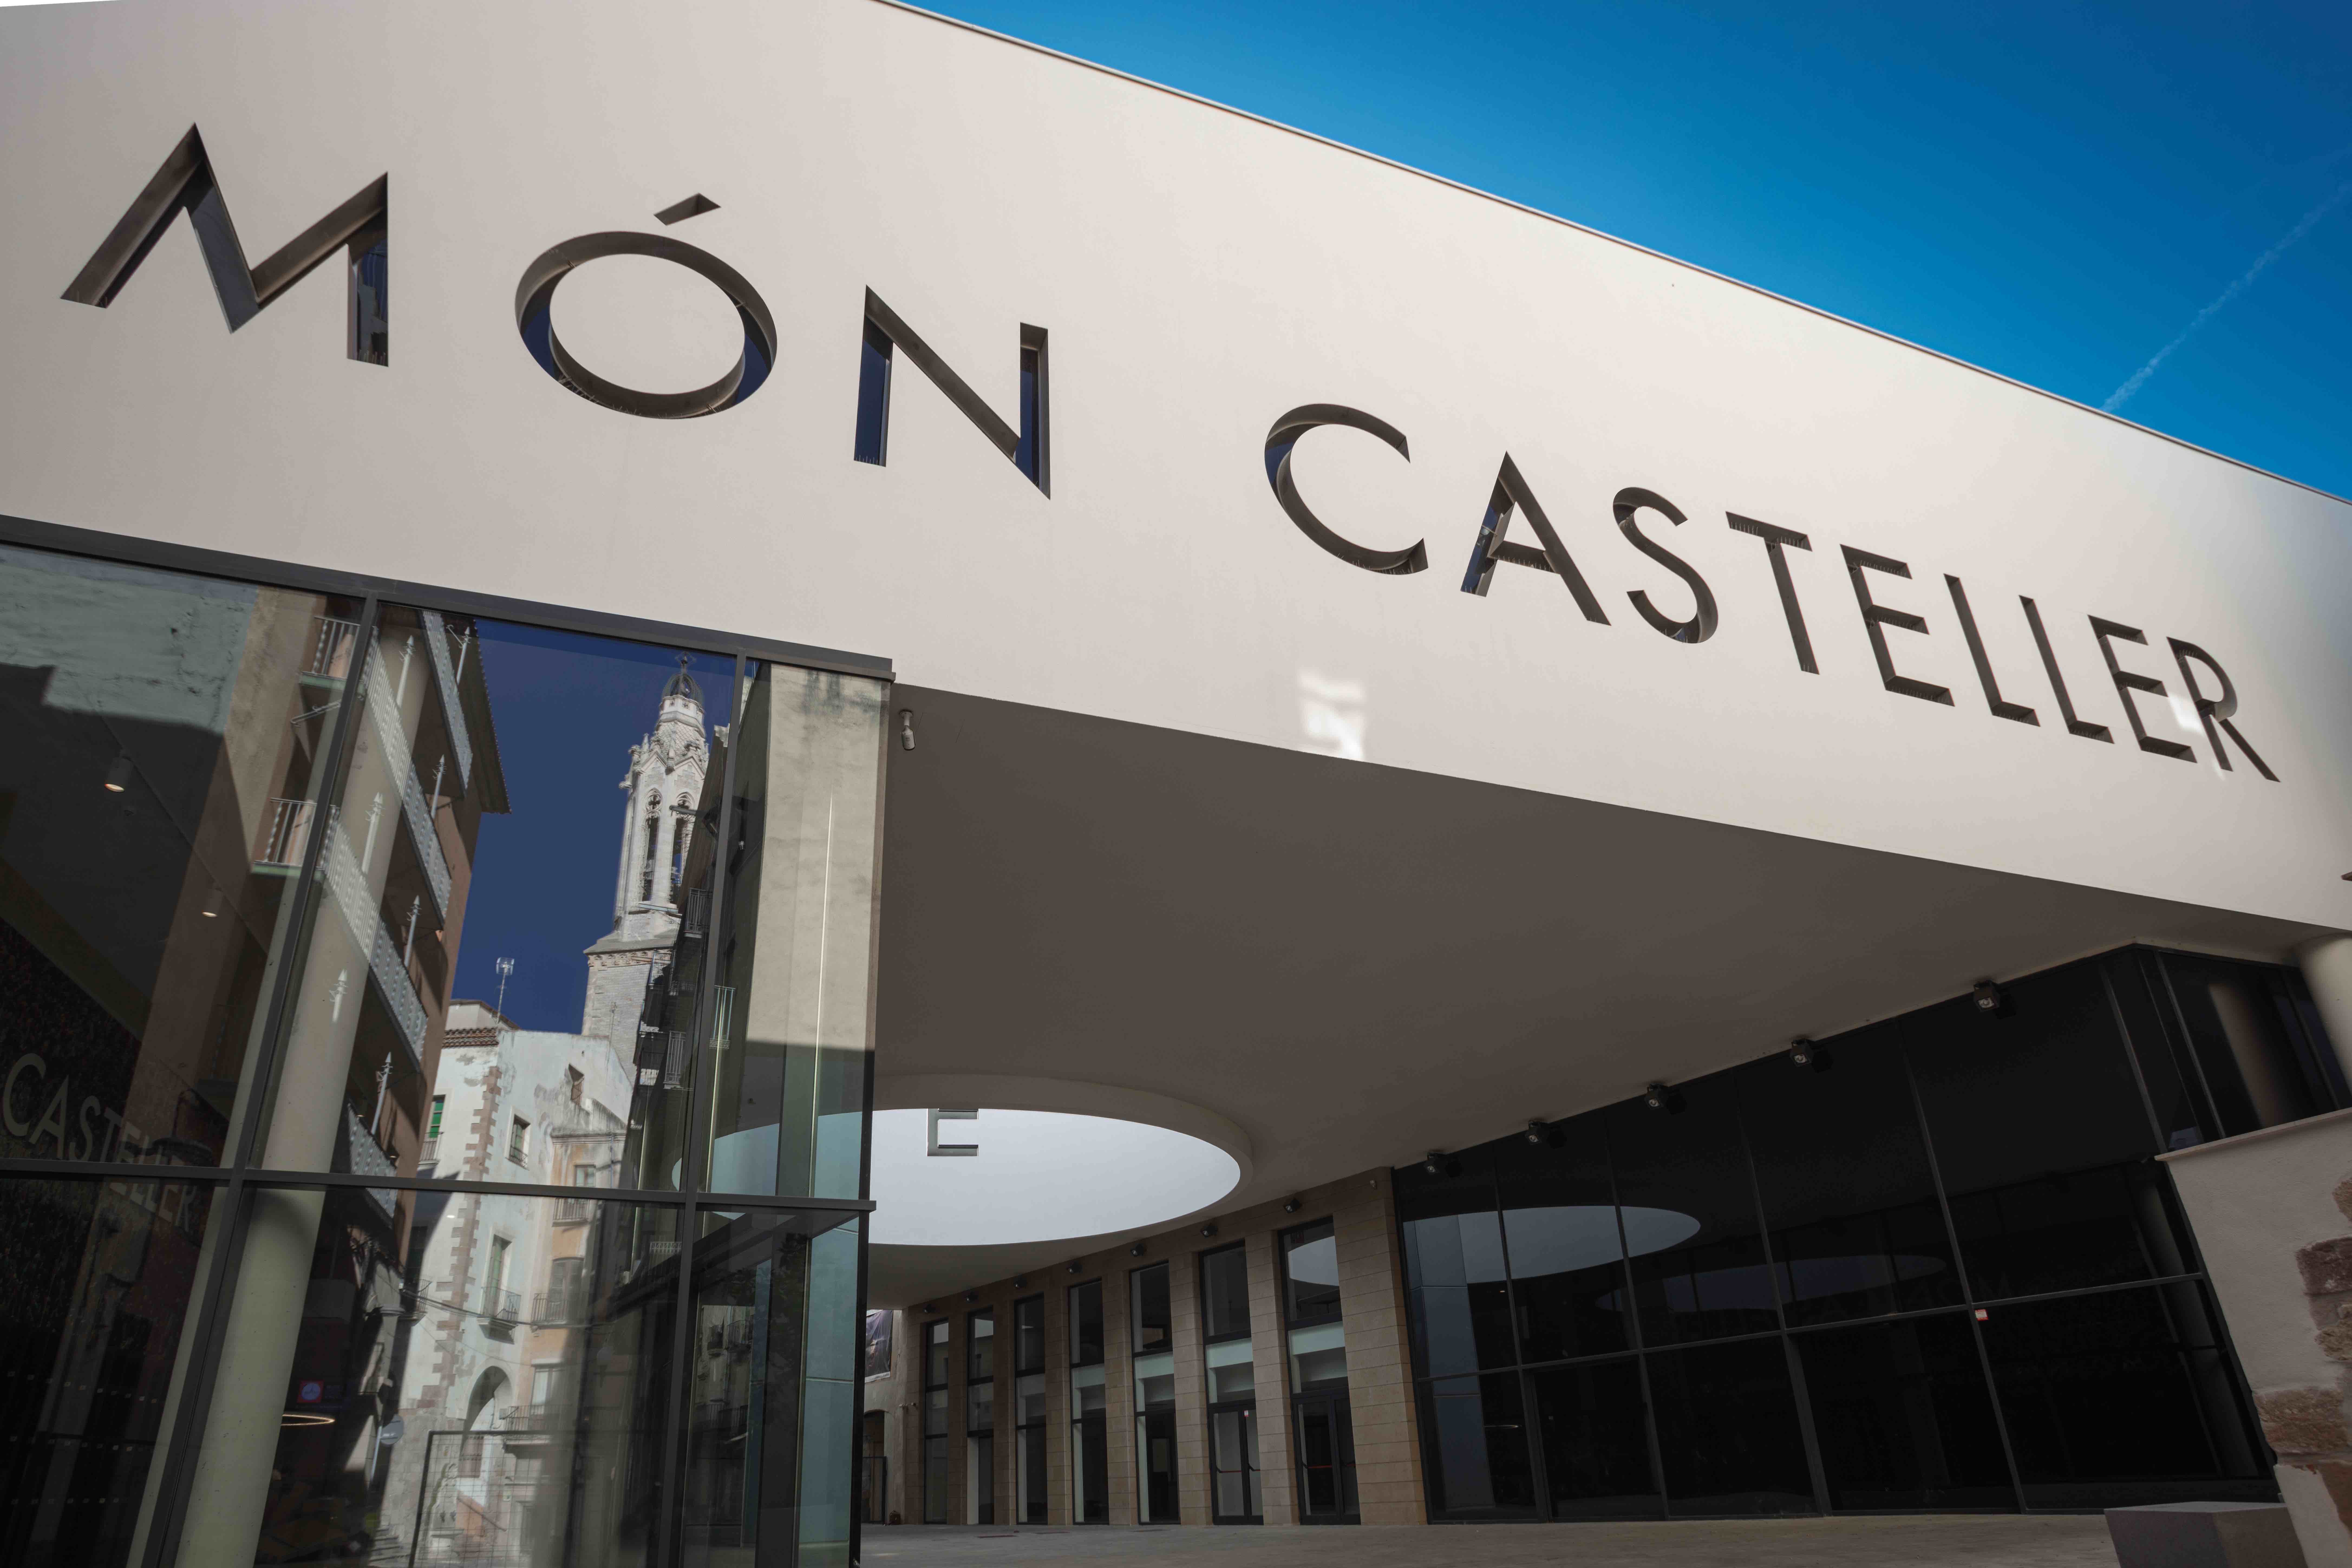 230831 Museu Casteller